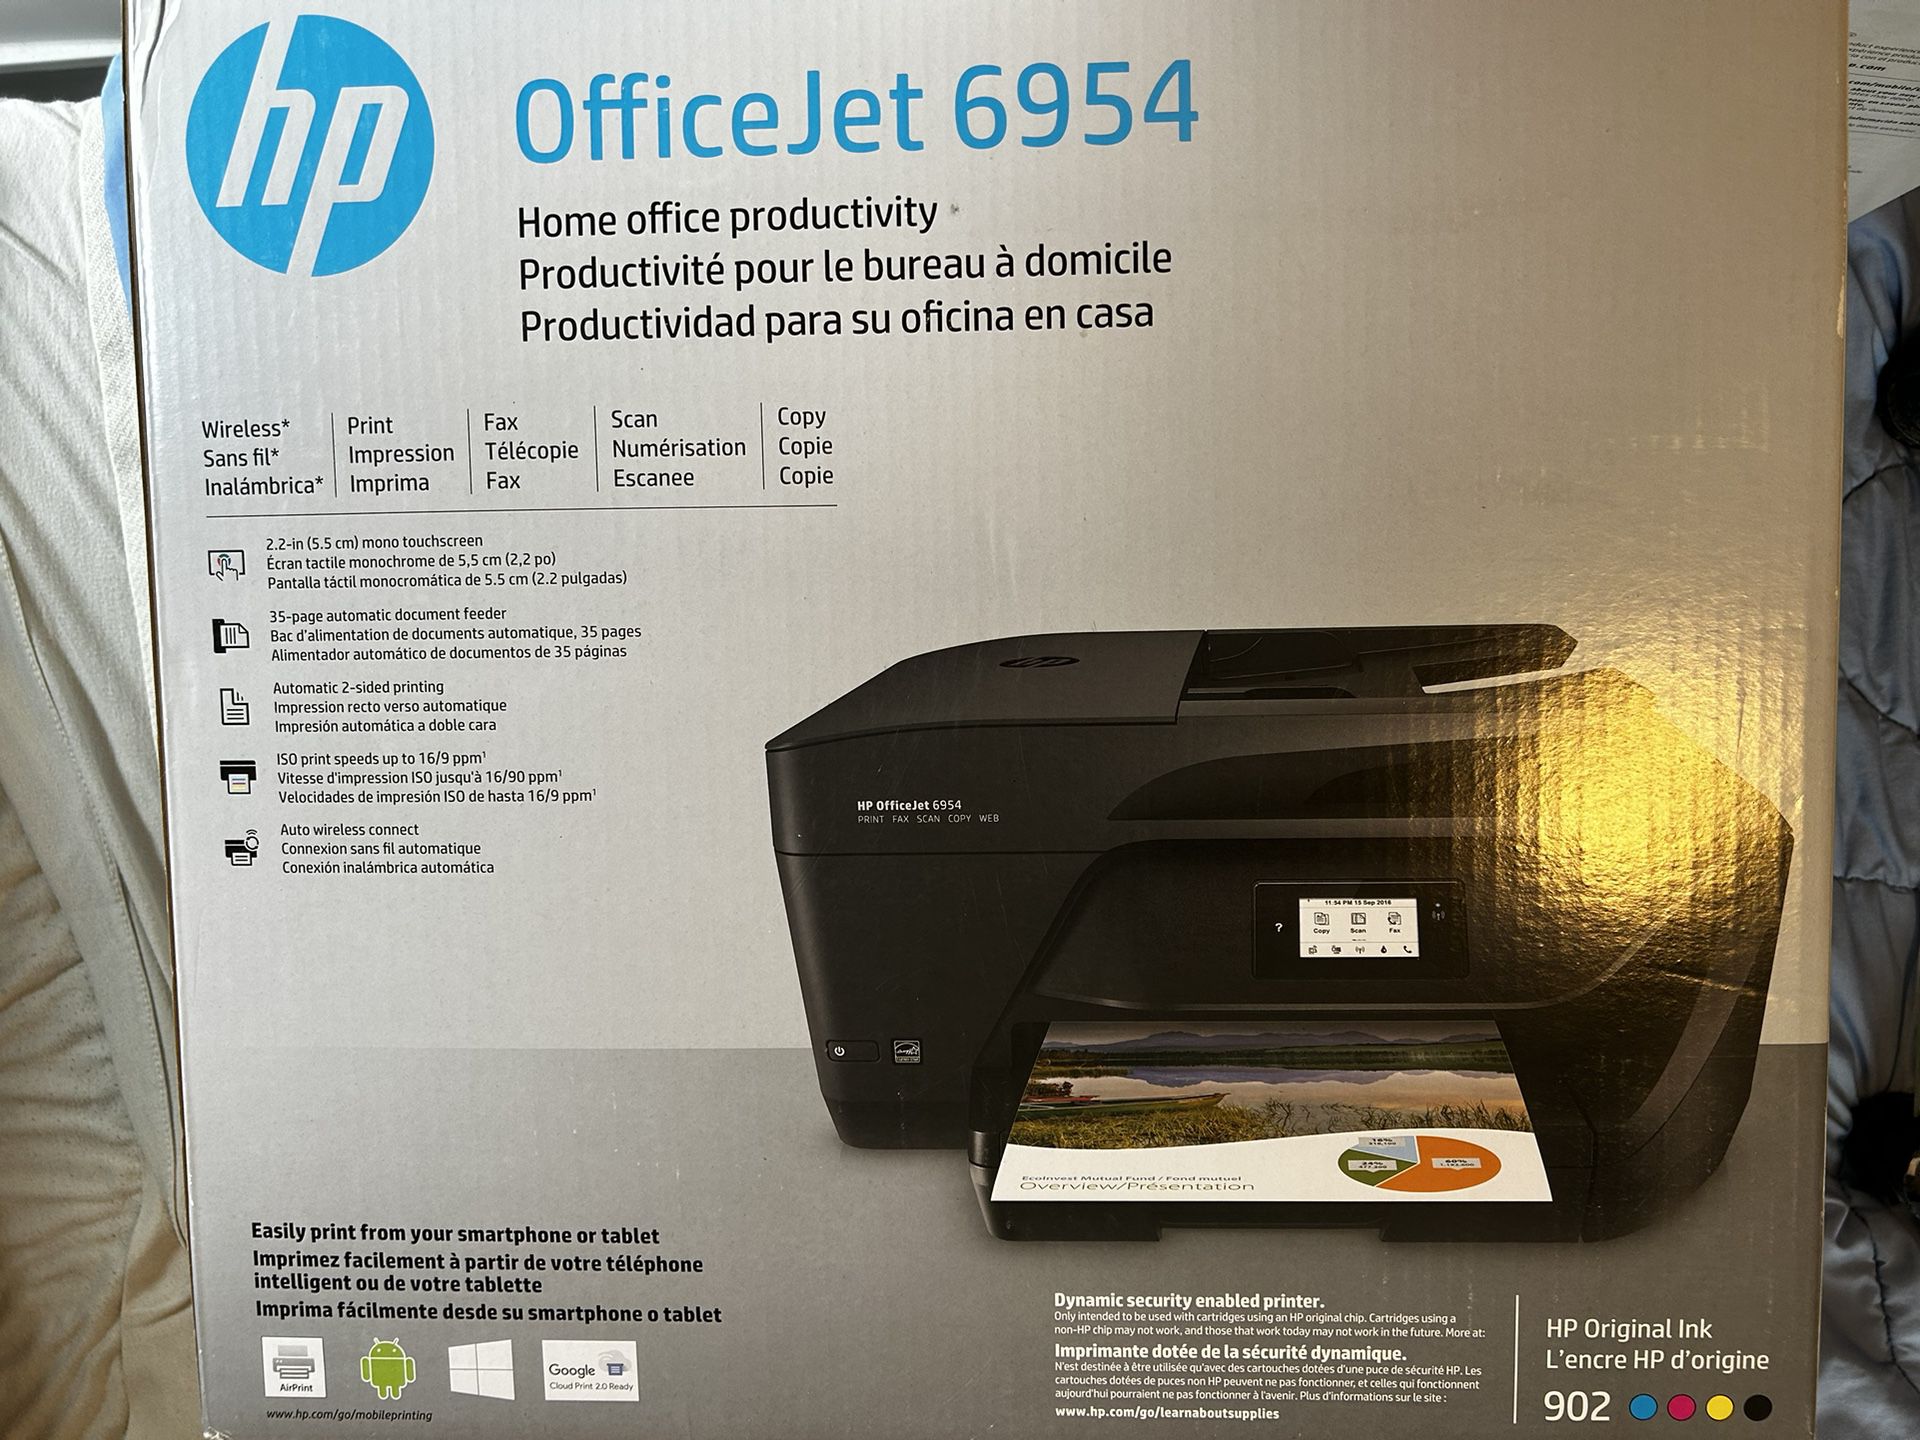 HP OfficeJet 6954 Like NEW!